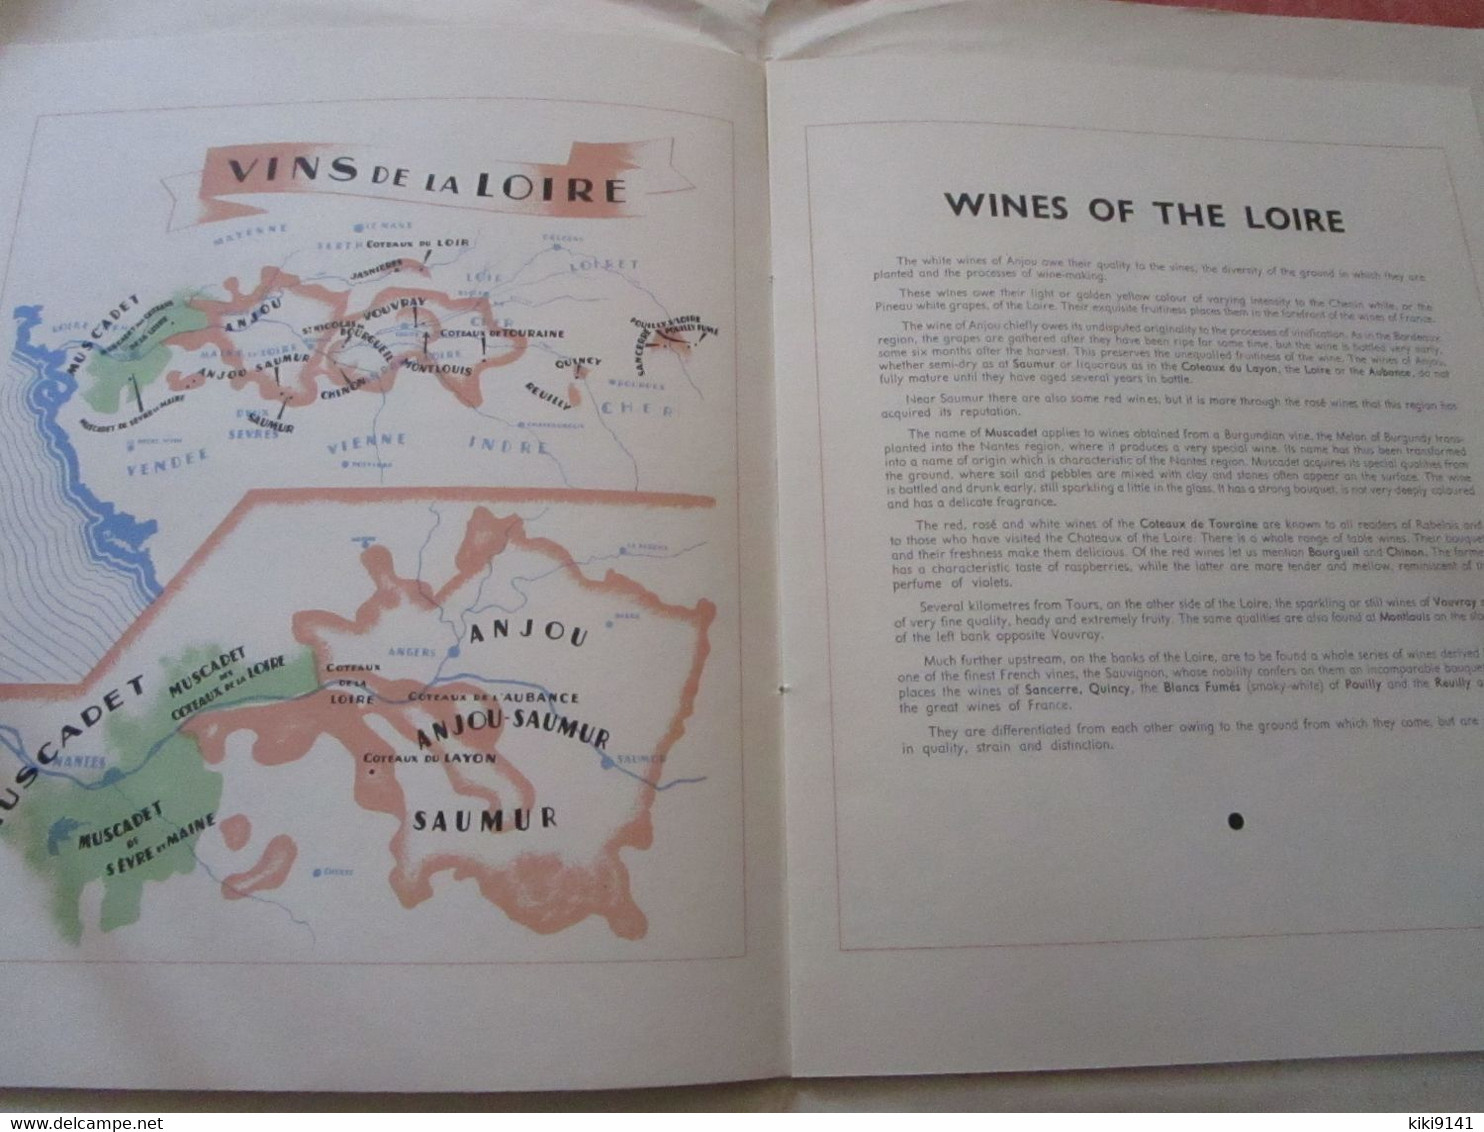 INTRODUCING FRENCH WINES - Le Comité National de Propagande en Faveur du Vin (28 pages)